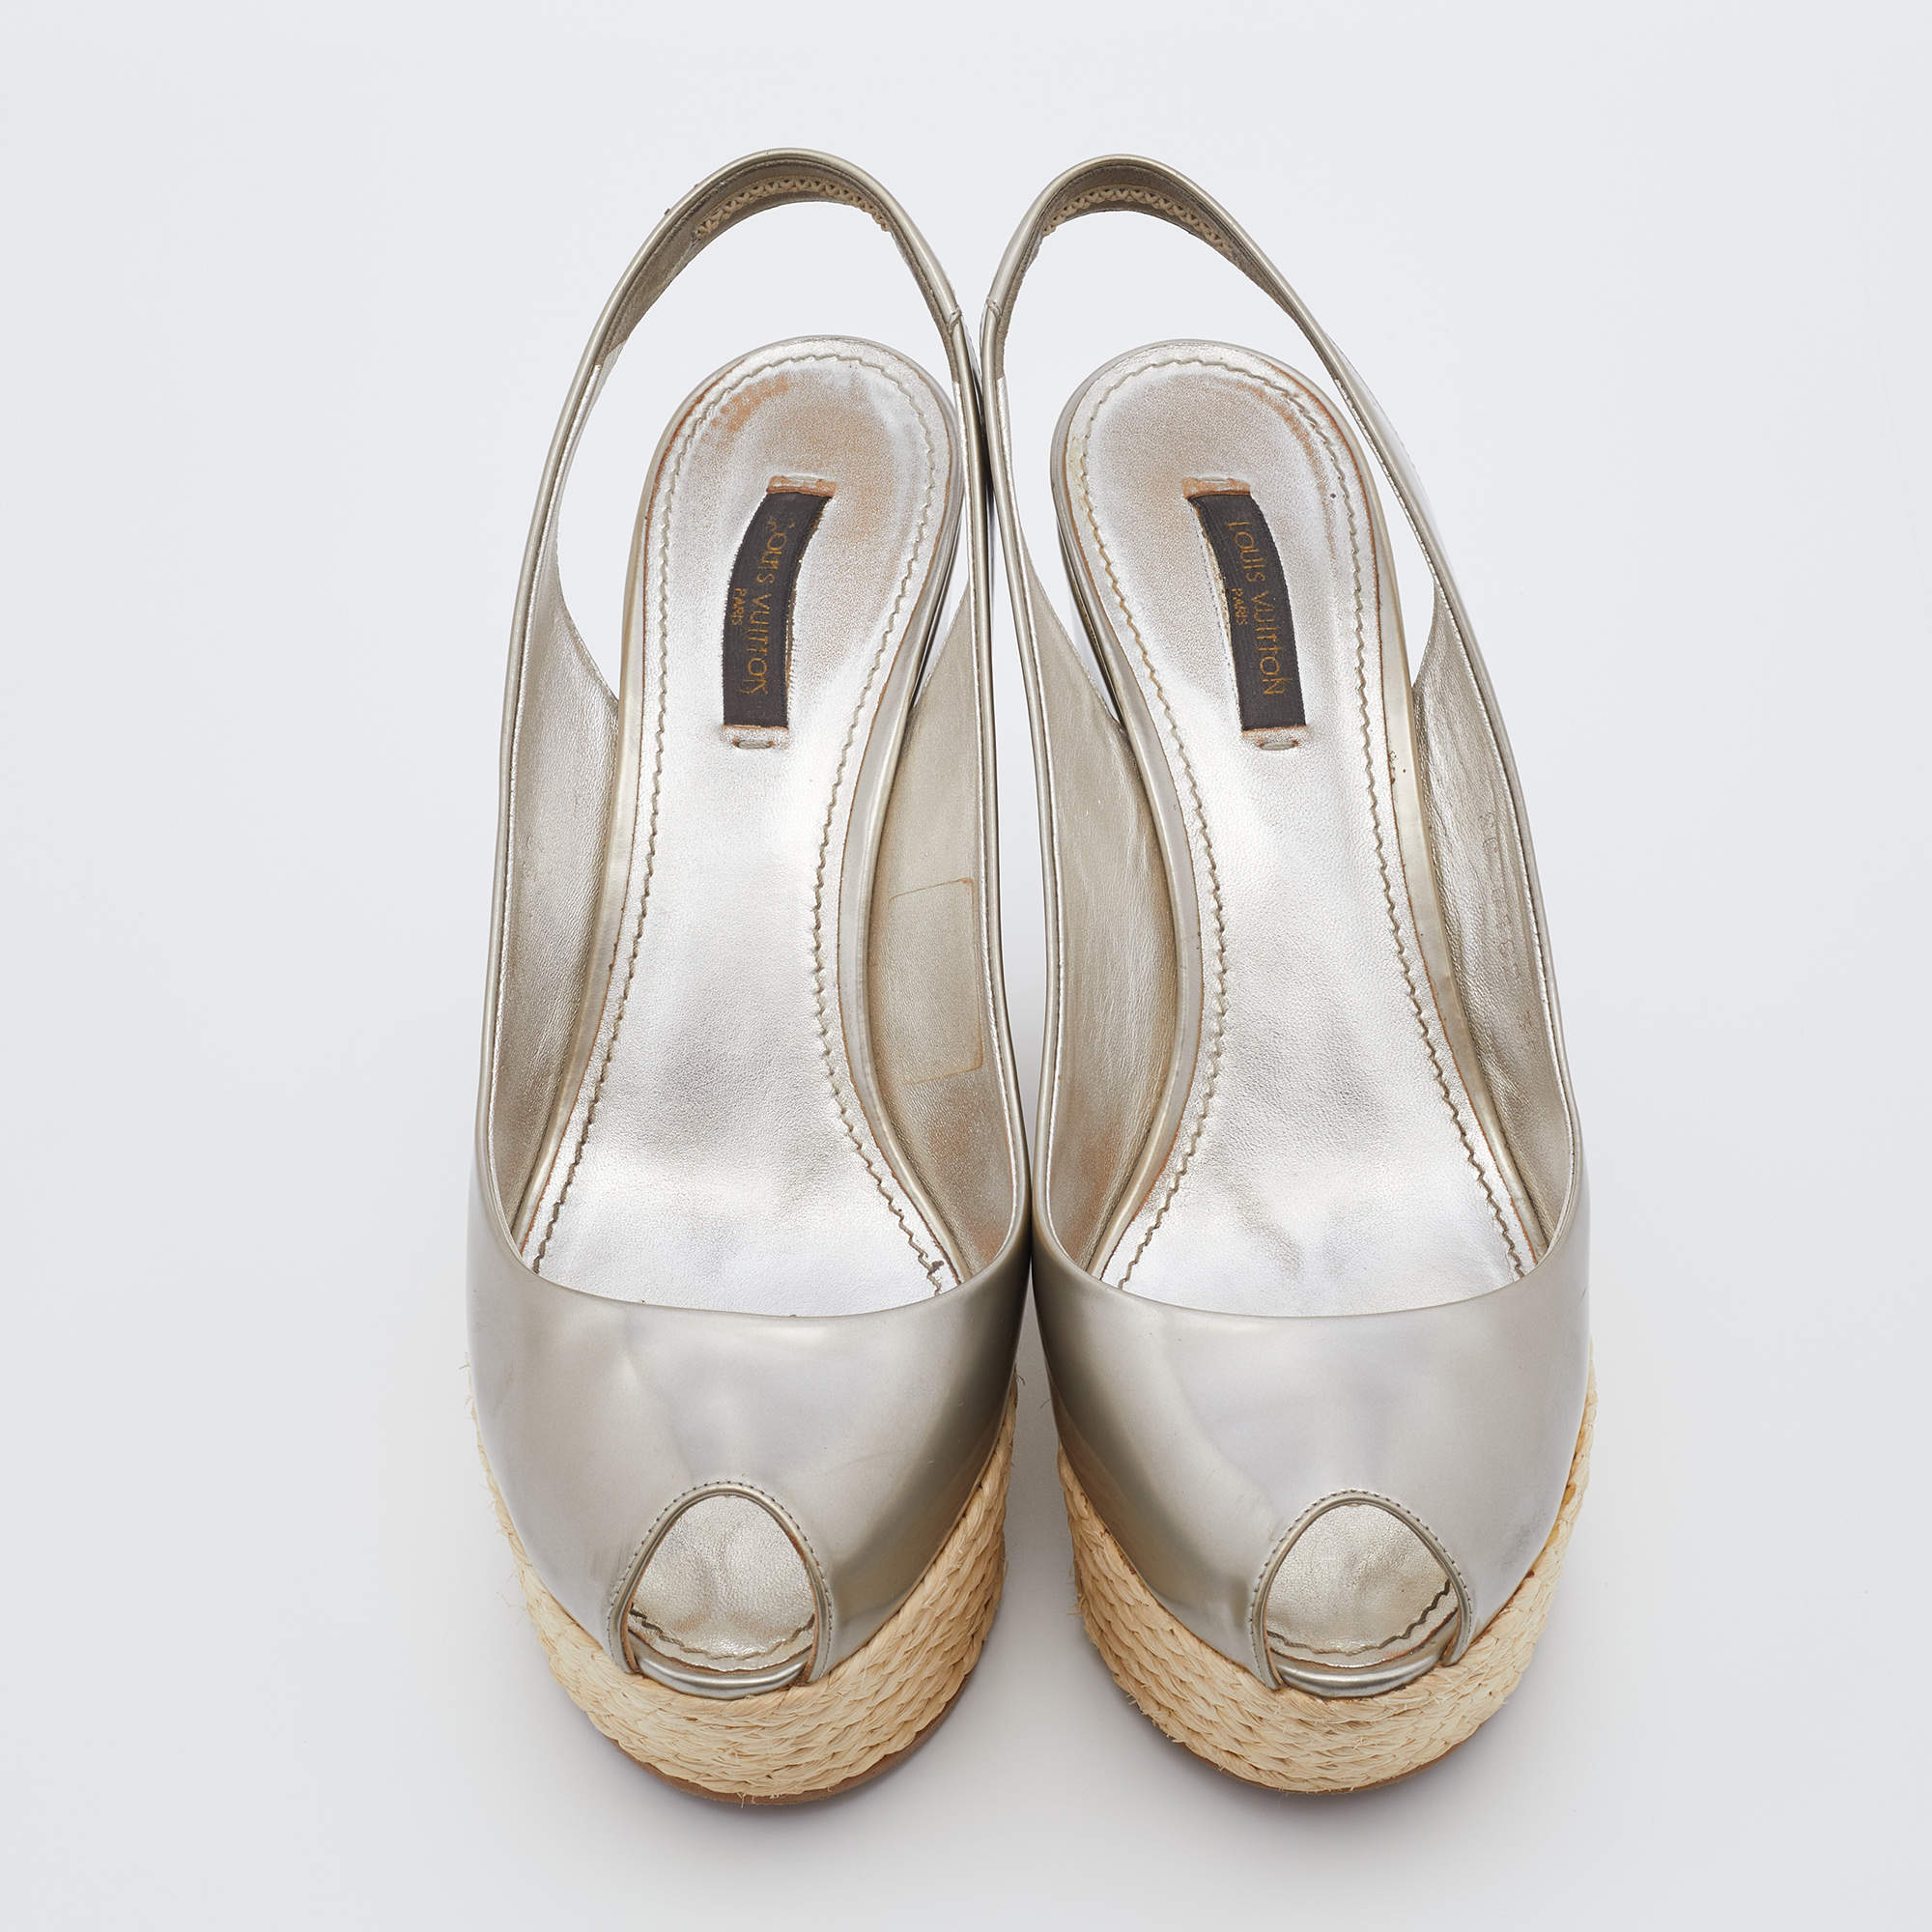 Louis Vuitton espadrille platform clogs white leather strap wedges sandals  $1800